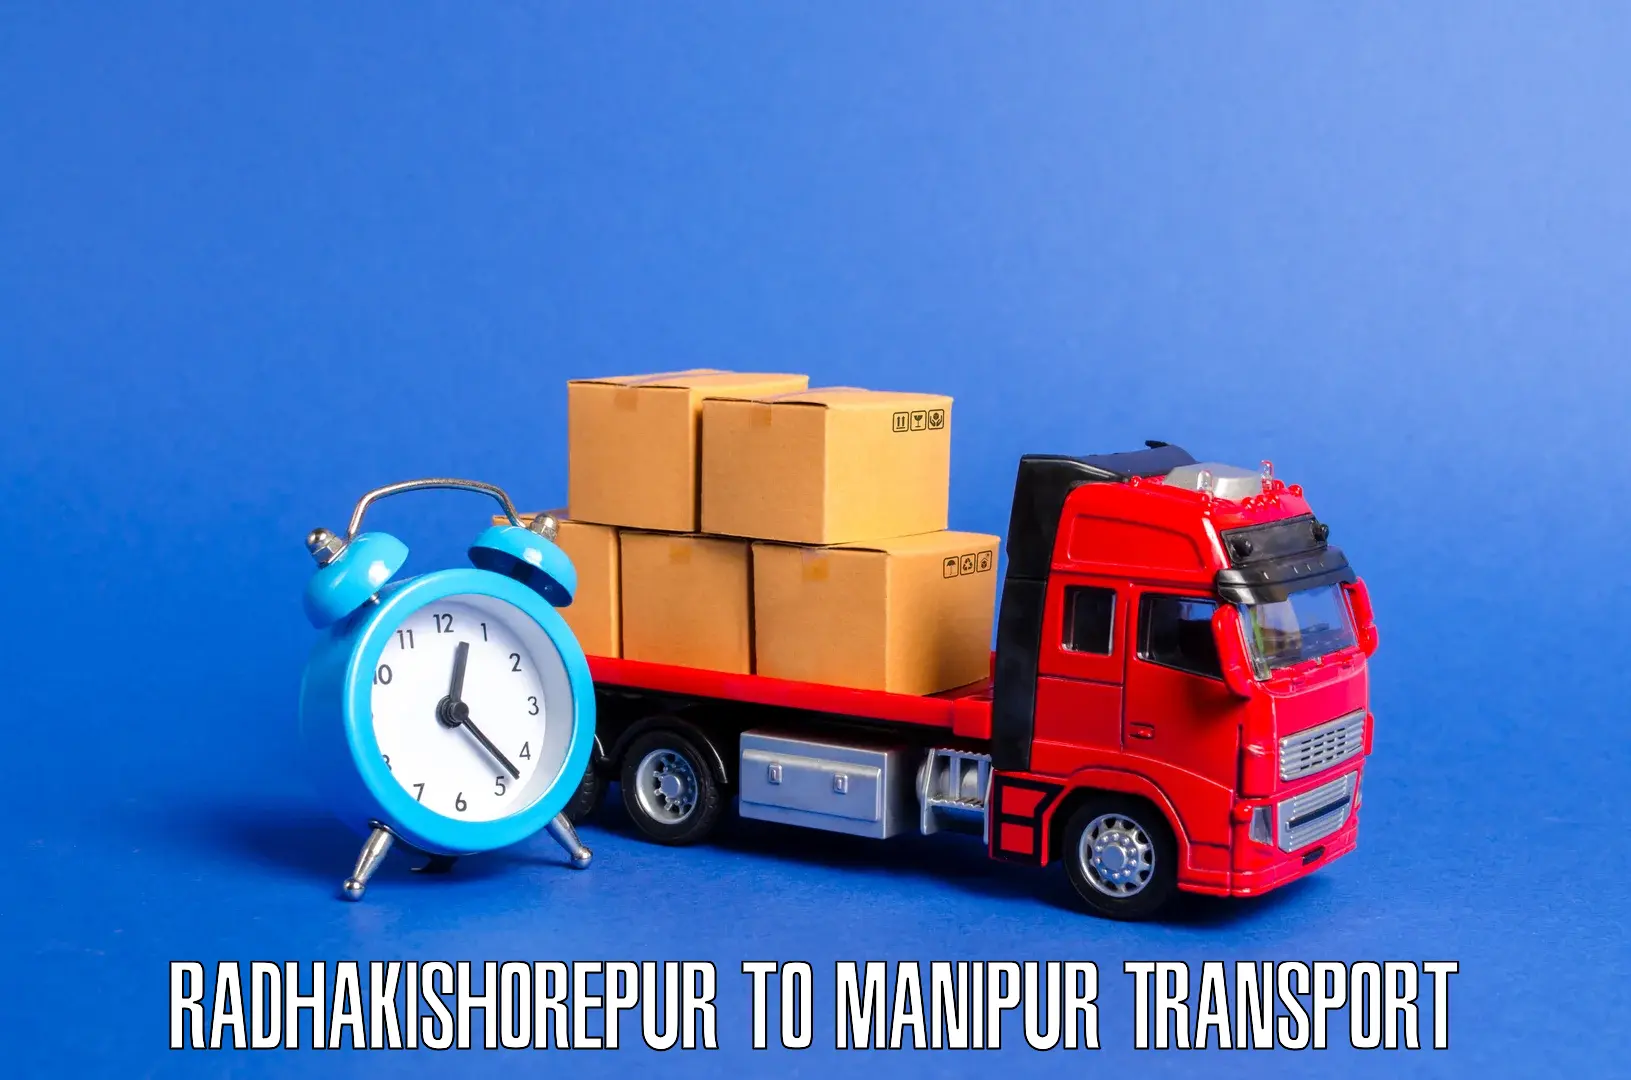 Two wheeler parcel service Radhakishorepur to Kaptipada